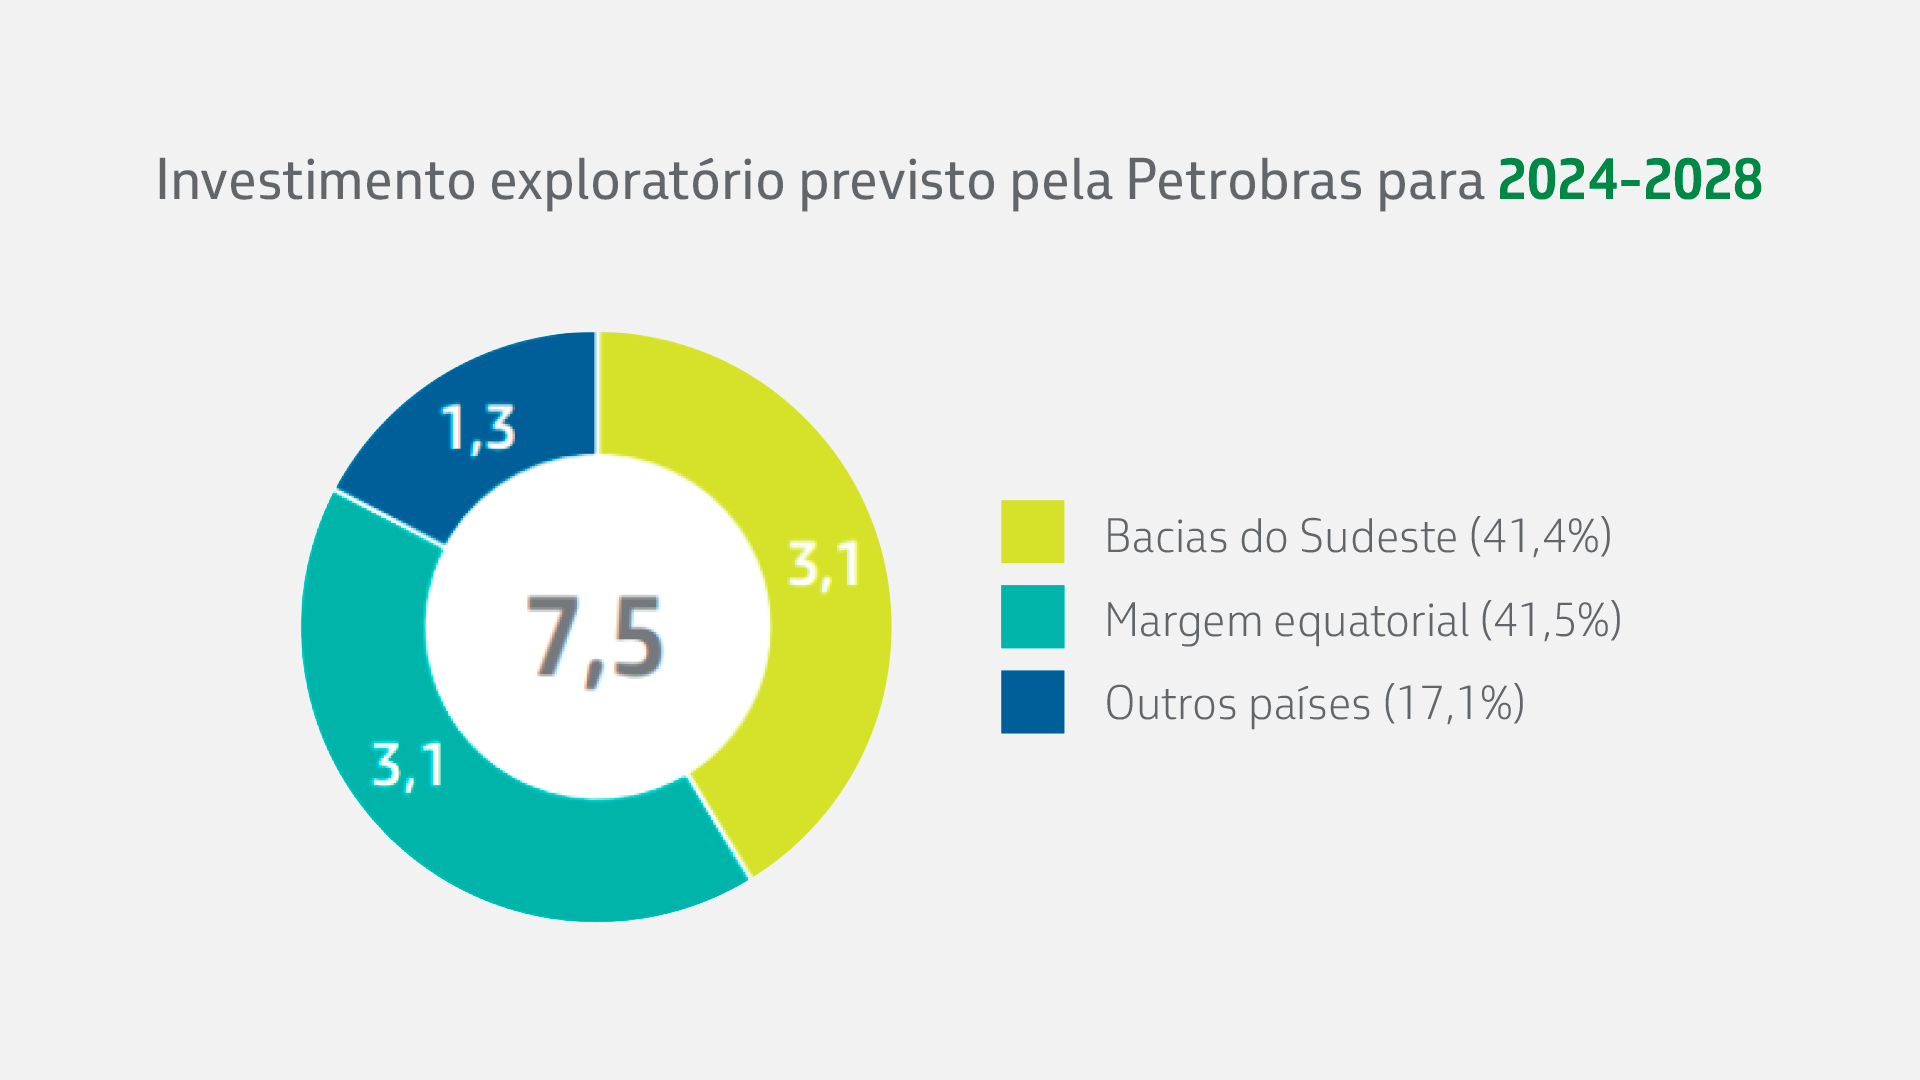 Gráfico com investimento exploratório previsto pela Petrobras até 2028, sendo 41,5% dele para a Margem Equatorial.